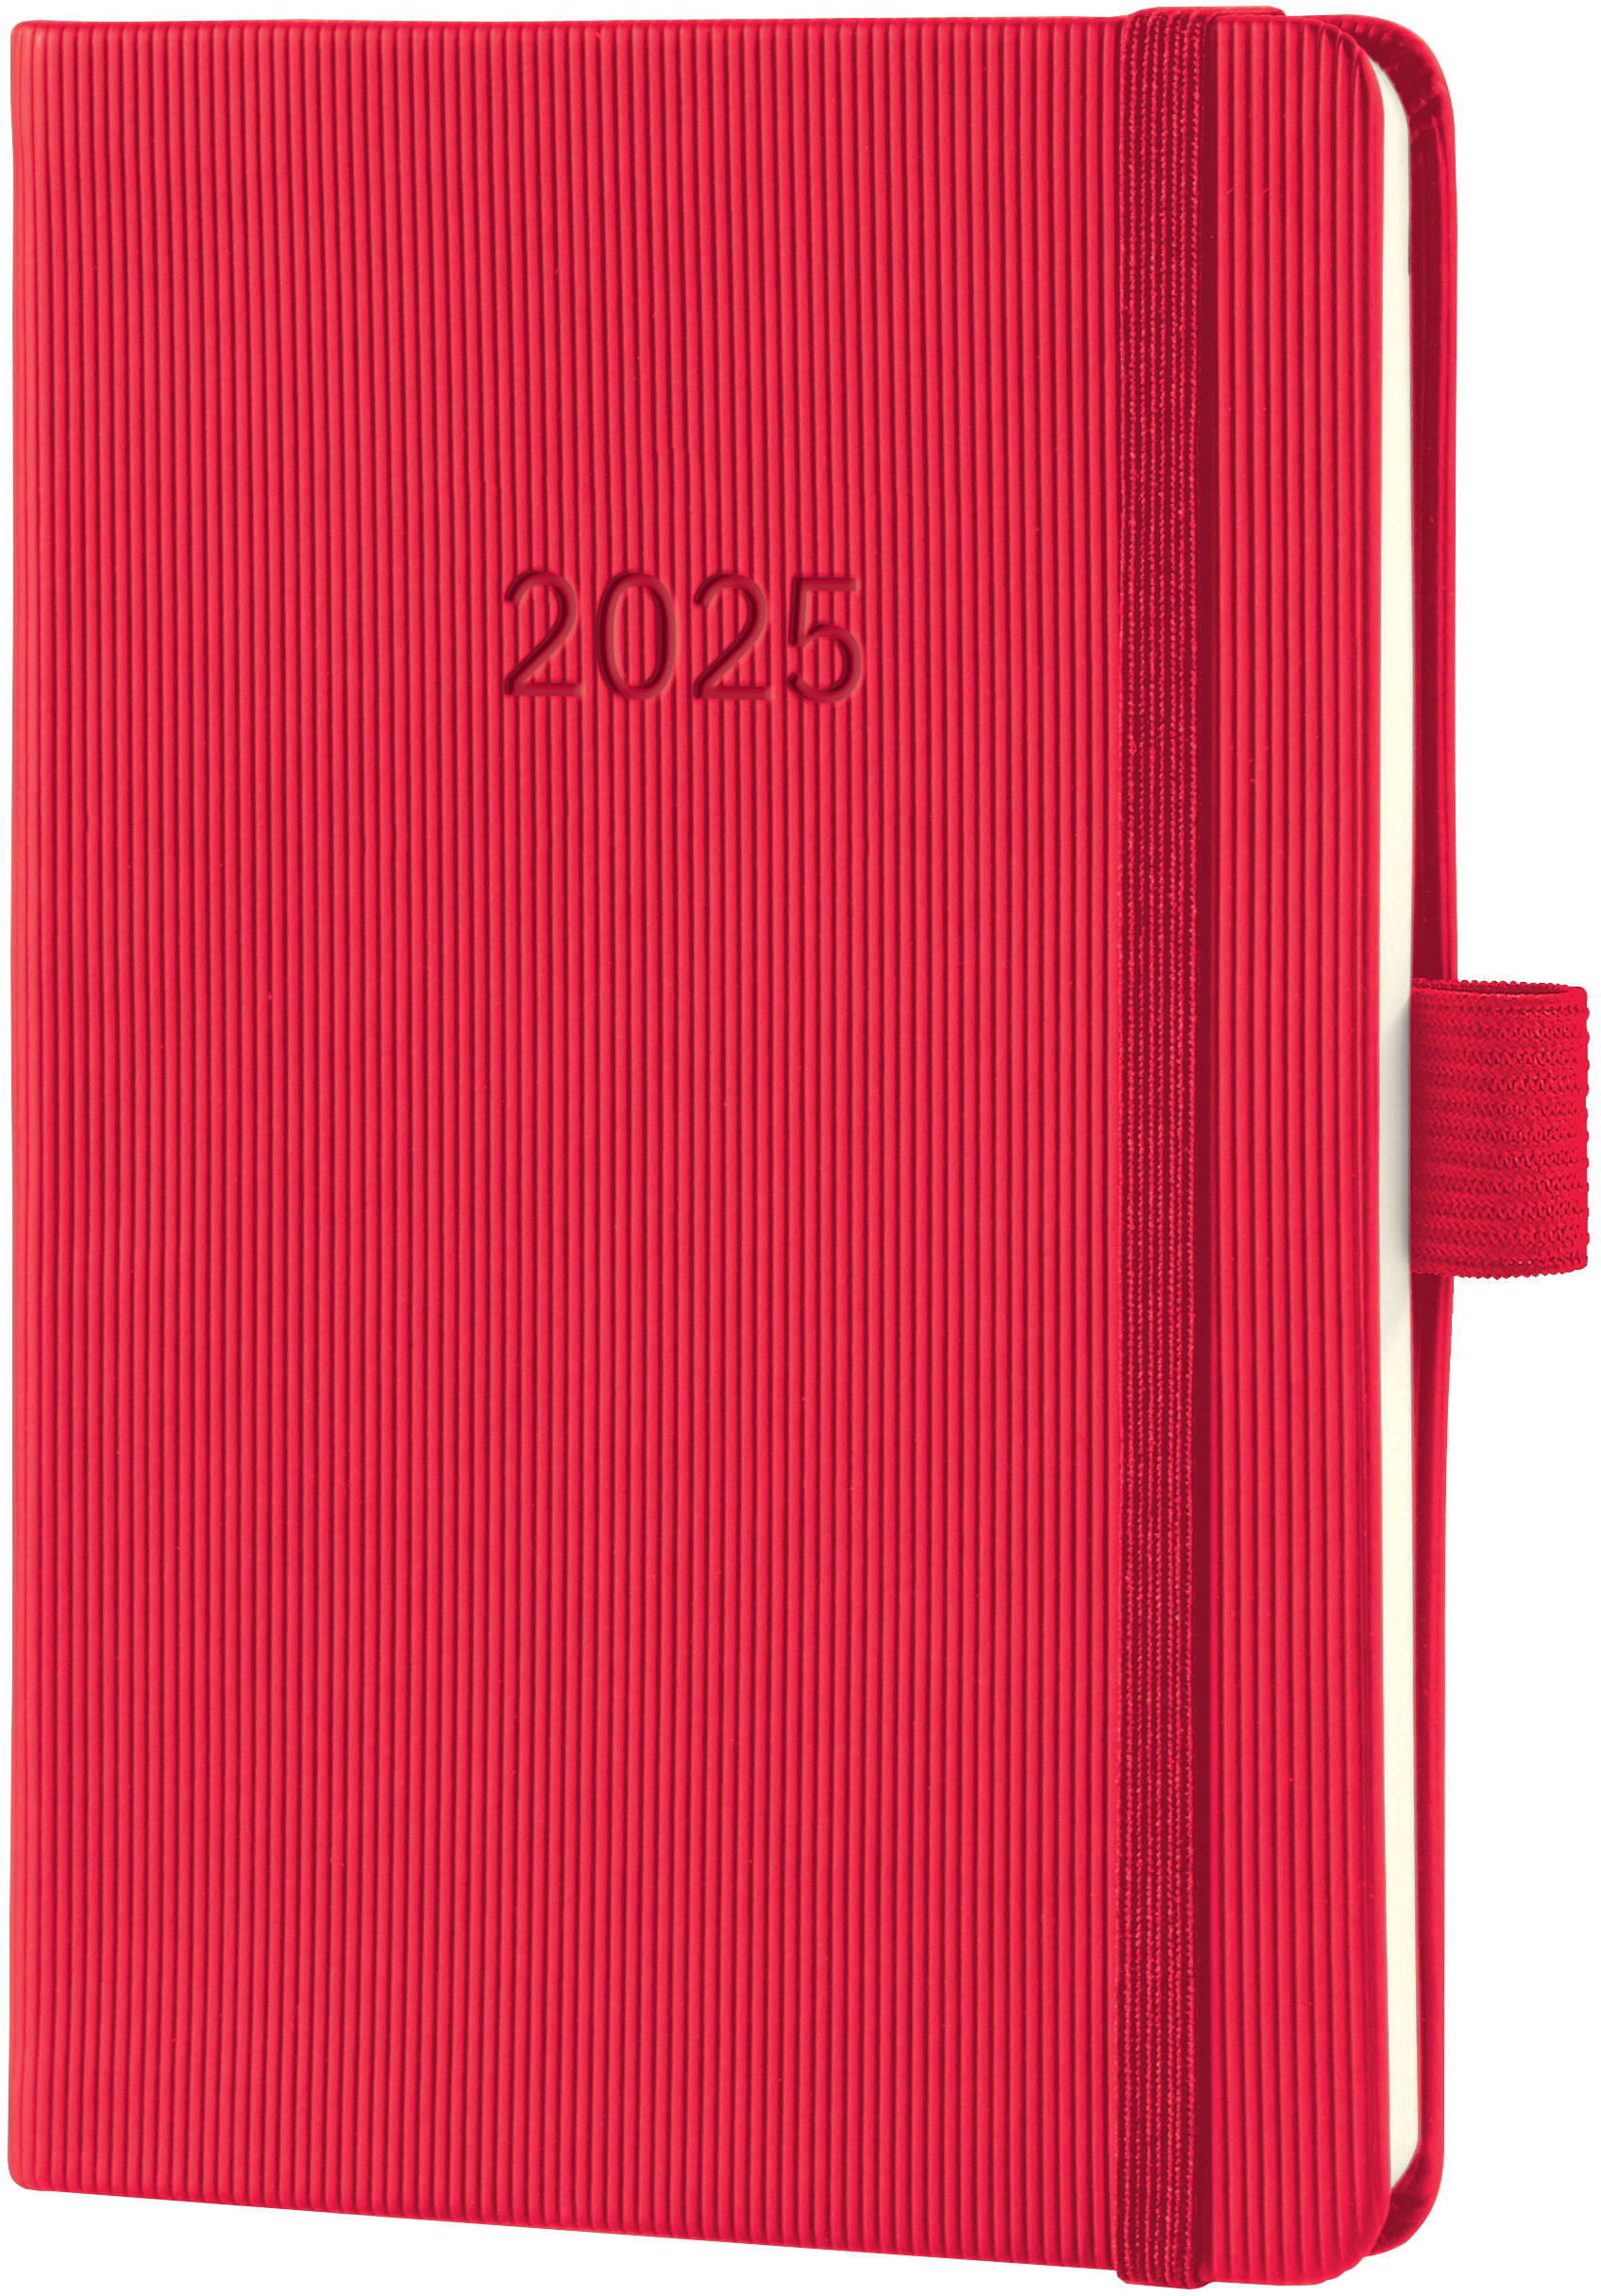 CONCEPTUM Calendrier semainier 2025 C2565 1S/2P rouge 15.1x10.8cm